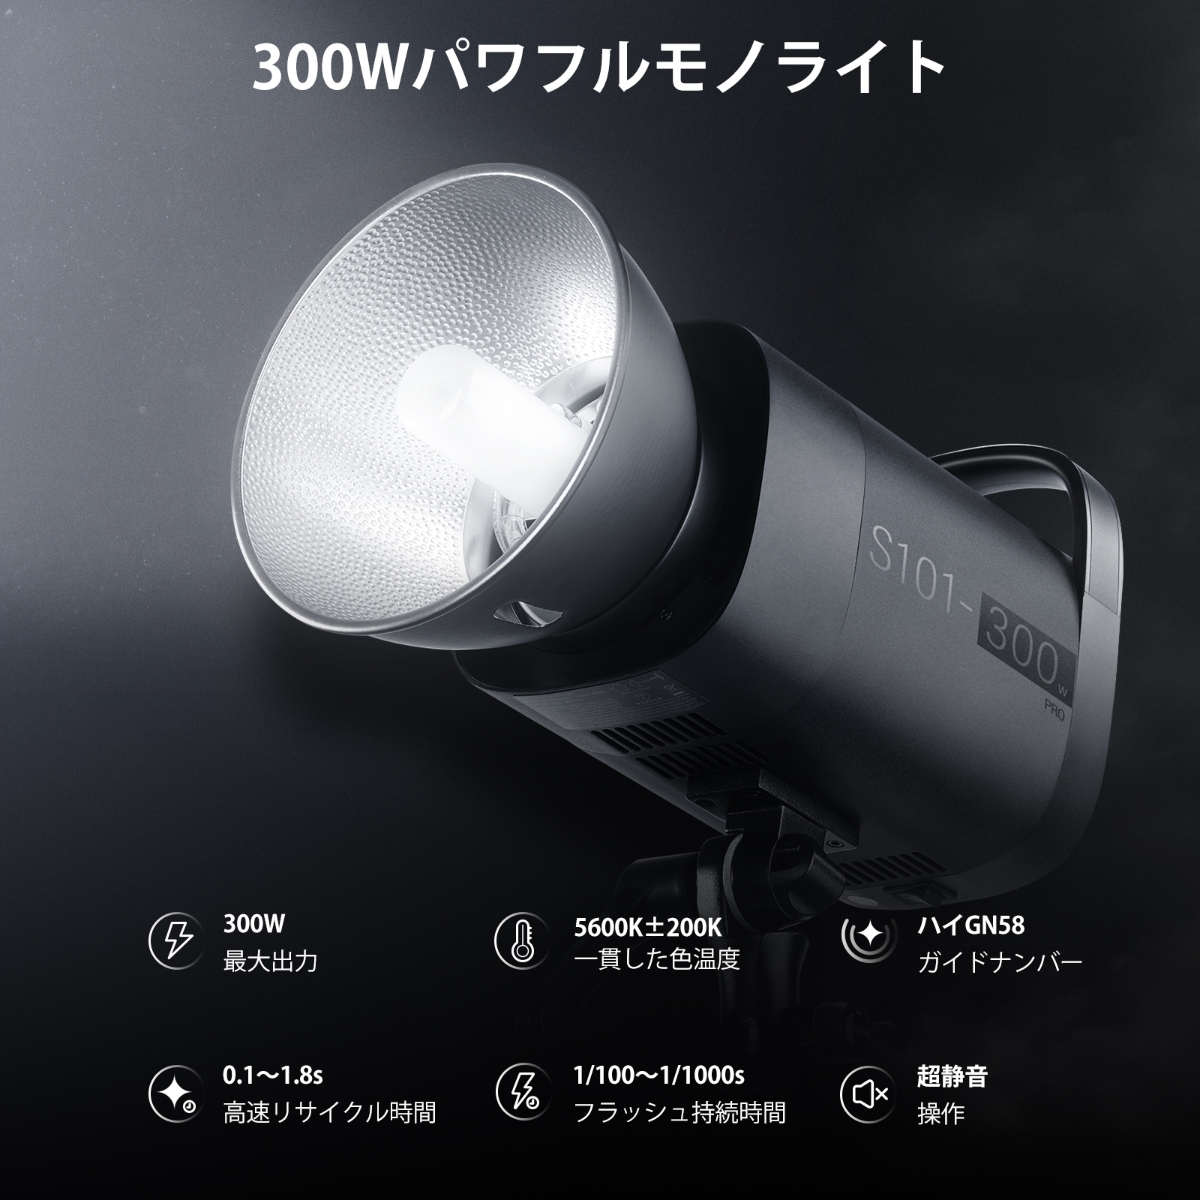 NEEWER JAPAN 公式サイト|プロ写真・撮影機材専門店. NEEWER S101-300W